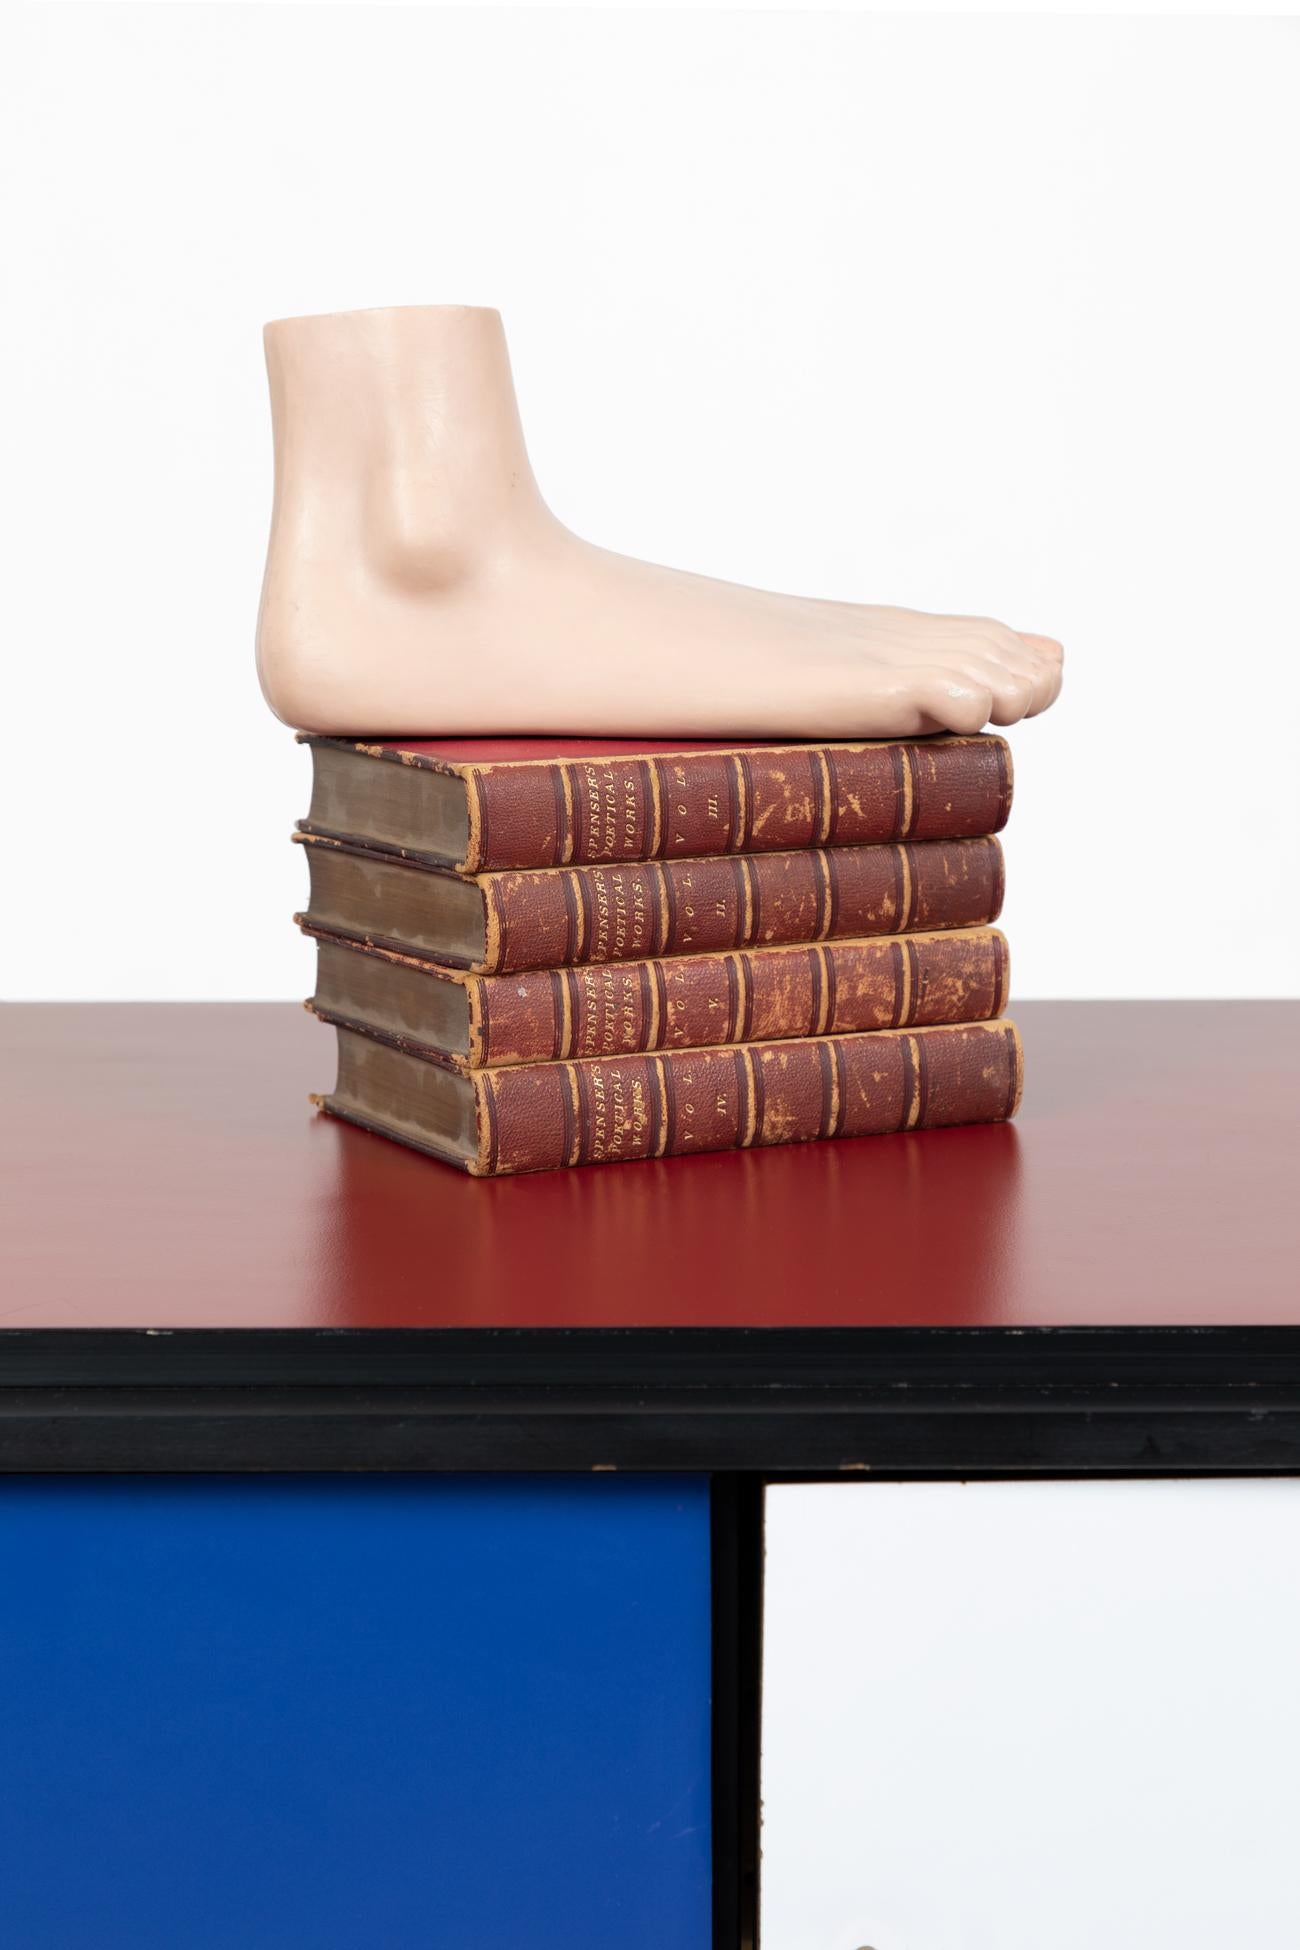 Figure anatomique détaillée d'un pied réalisée par le grand spécialiste des figures anatomiques, SOMSO.

Le modèle représente fidèlement les os, les muscles, les ligaments et les nerfs d'un être humain souffrant d'un pied plat.

Allemagne, vers